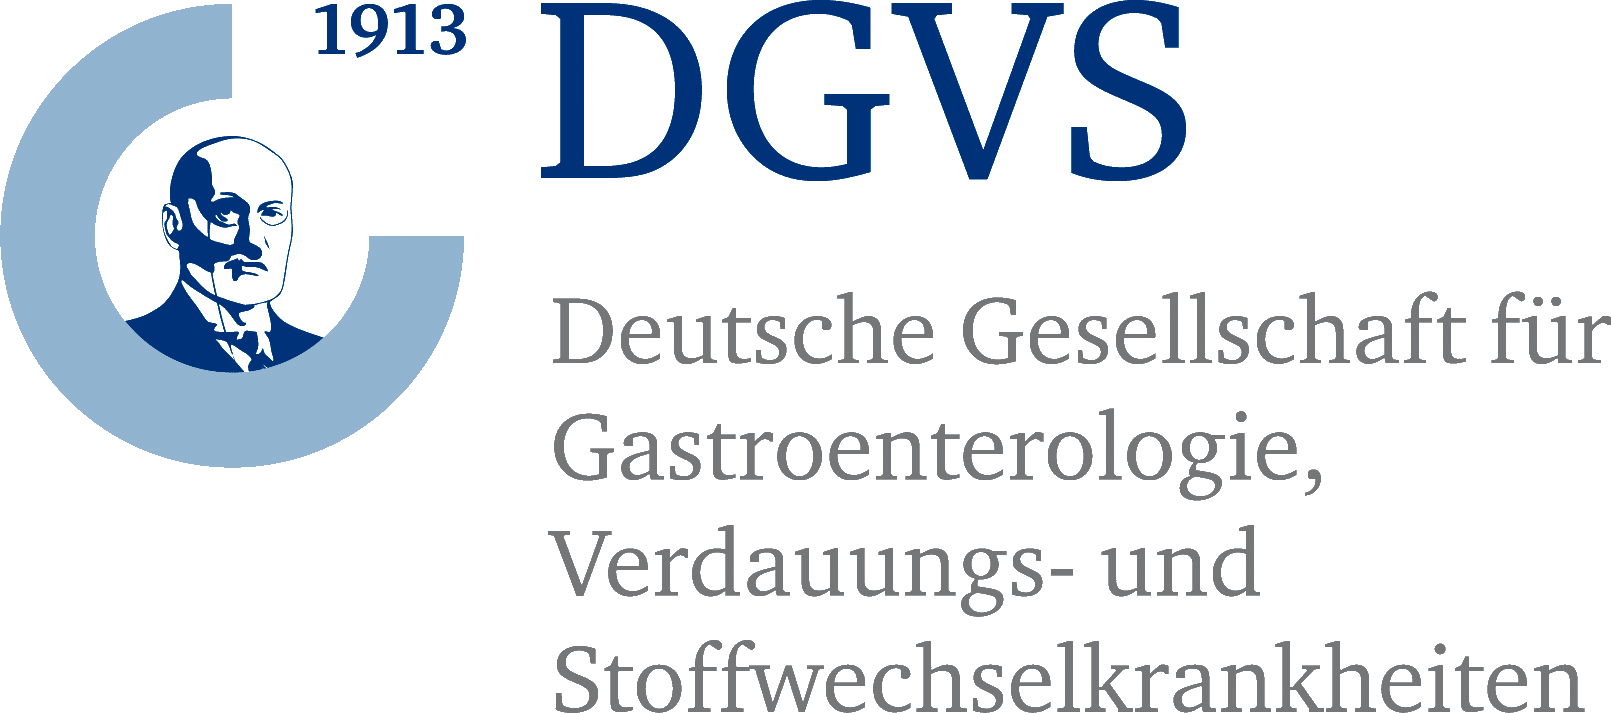 Deutsche Gesellschaft für Gastroenterologie, Verdauungs- und Stoffwechselkrankheiten (DGVS)